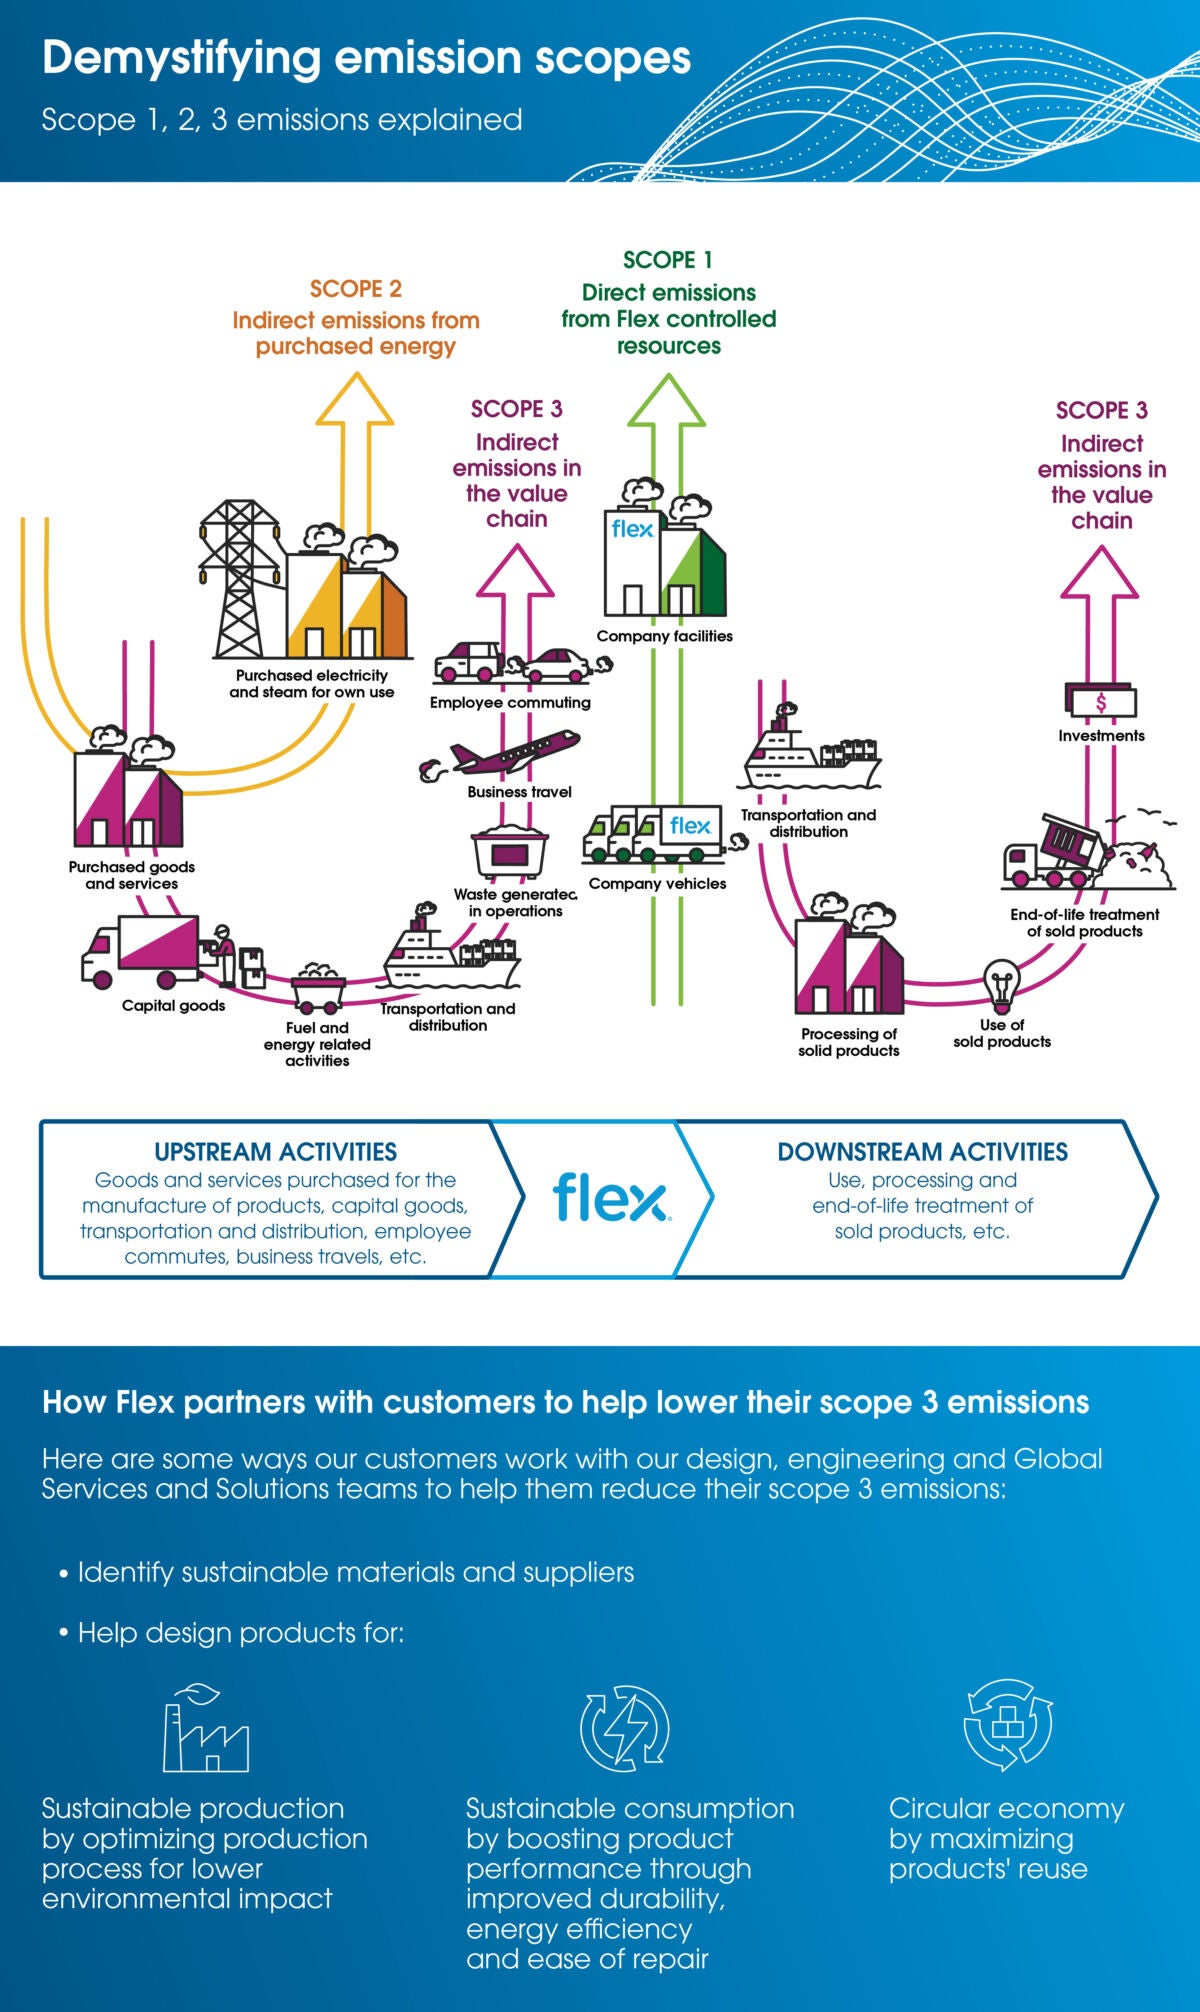 Flex Sostenibilidad: Desmitificando los alcances de emisiones 1, 2 y 3